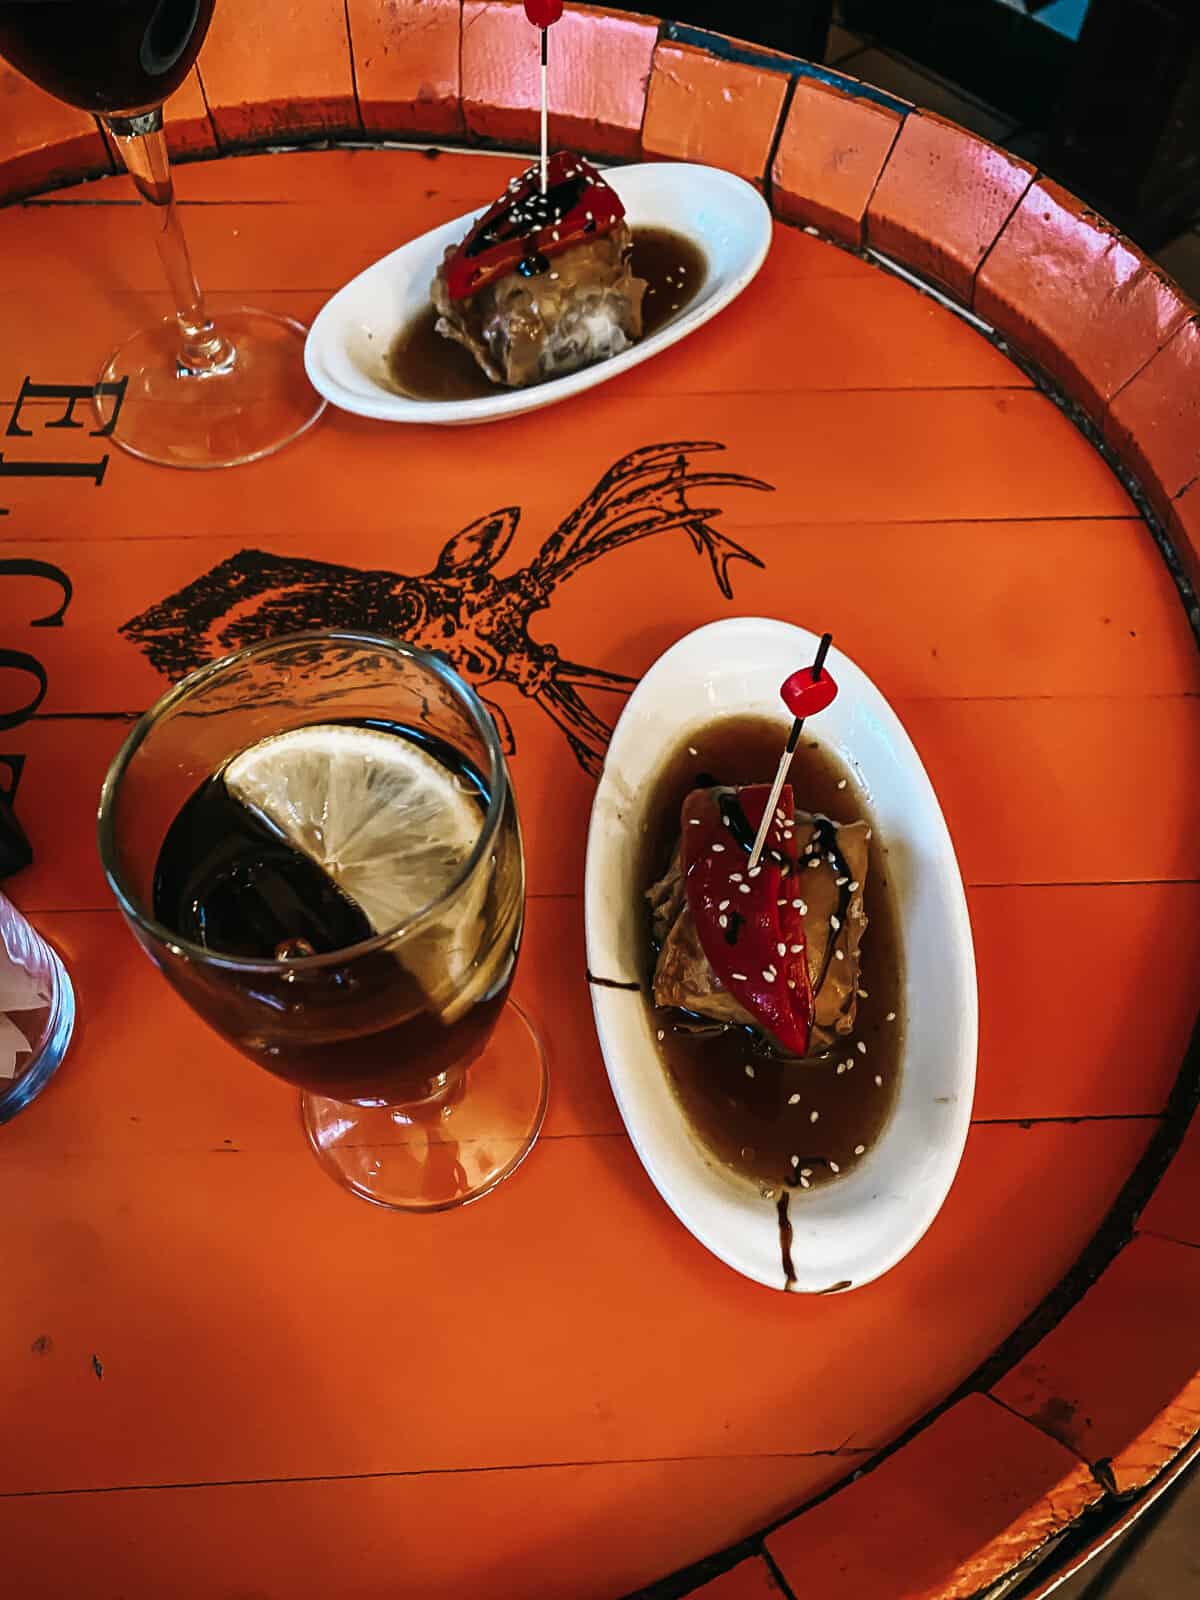 Regalitos de Rabo de Toro from el Anciano rey de los Vinos in Madrid on a table with a glass of vermouth